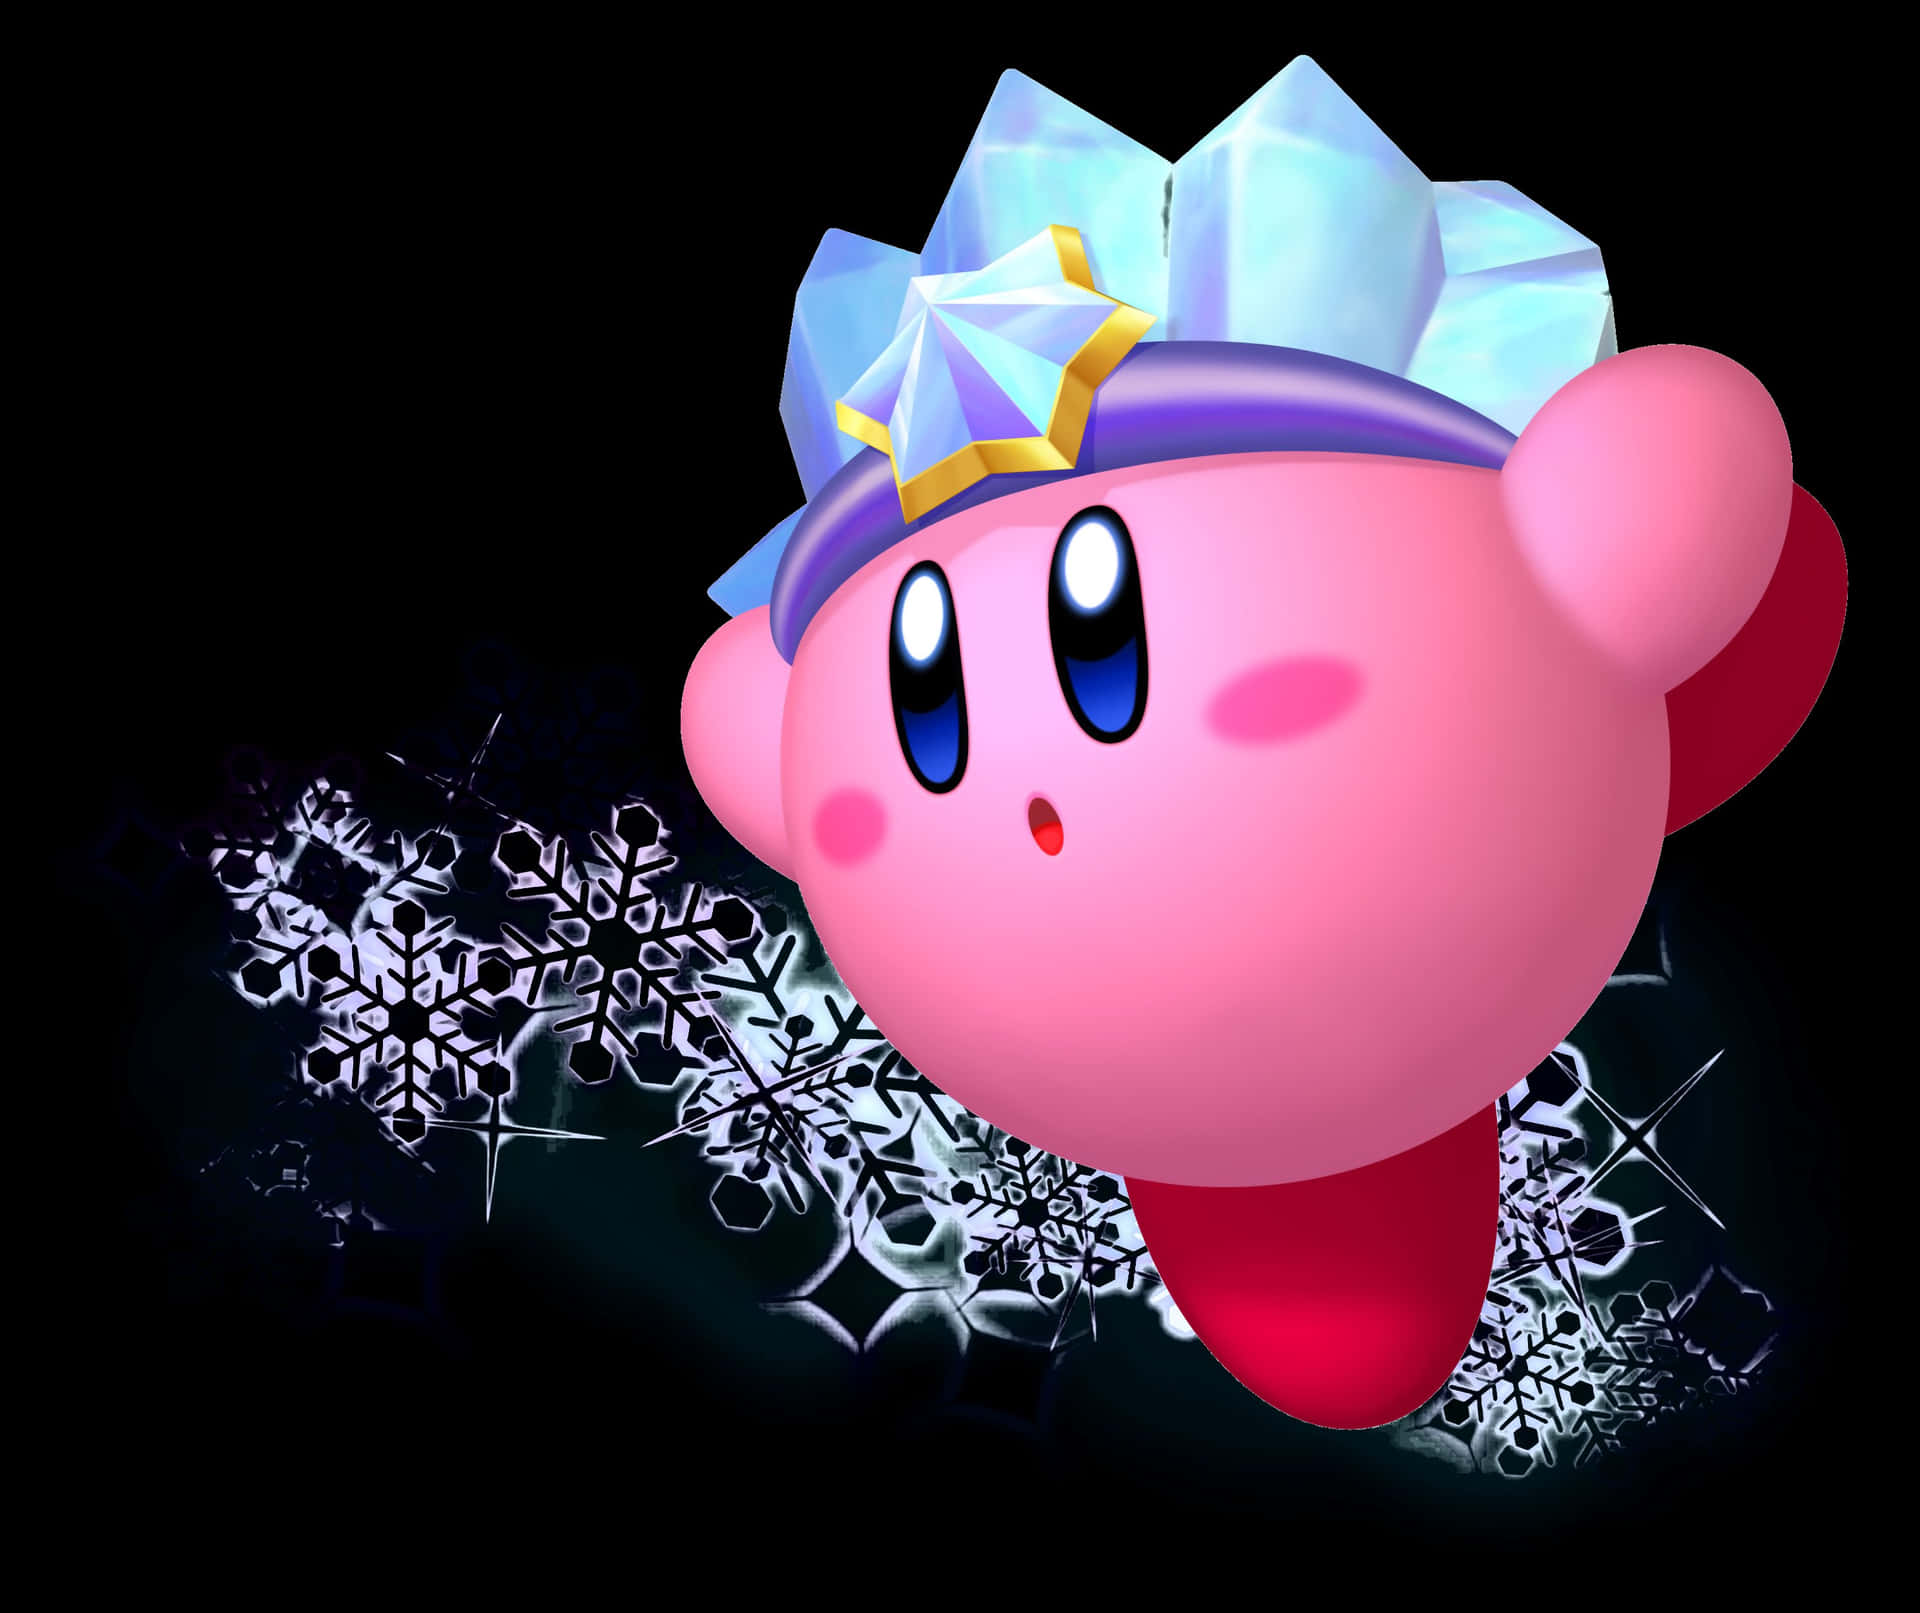 Udforsk verden af Dream Land med Kirby!